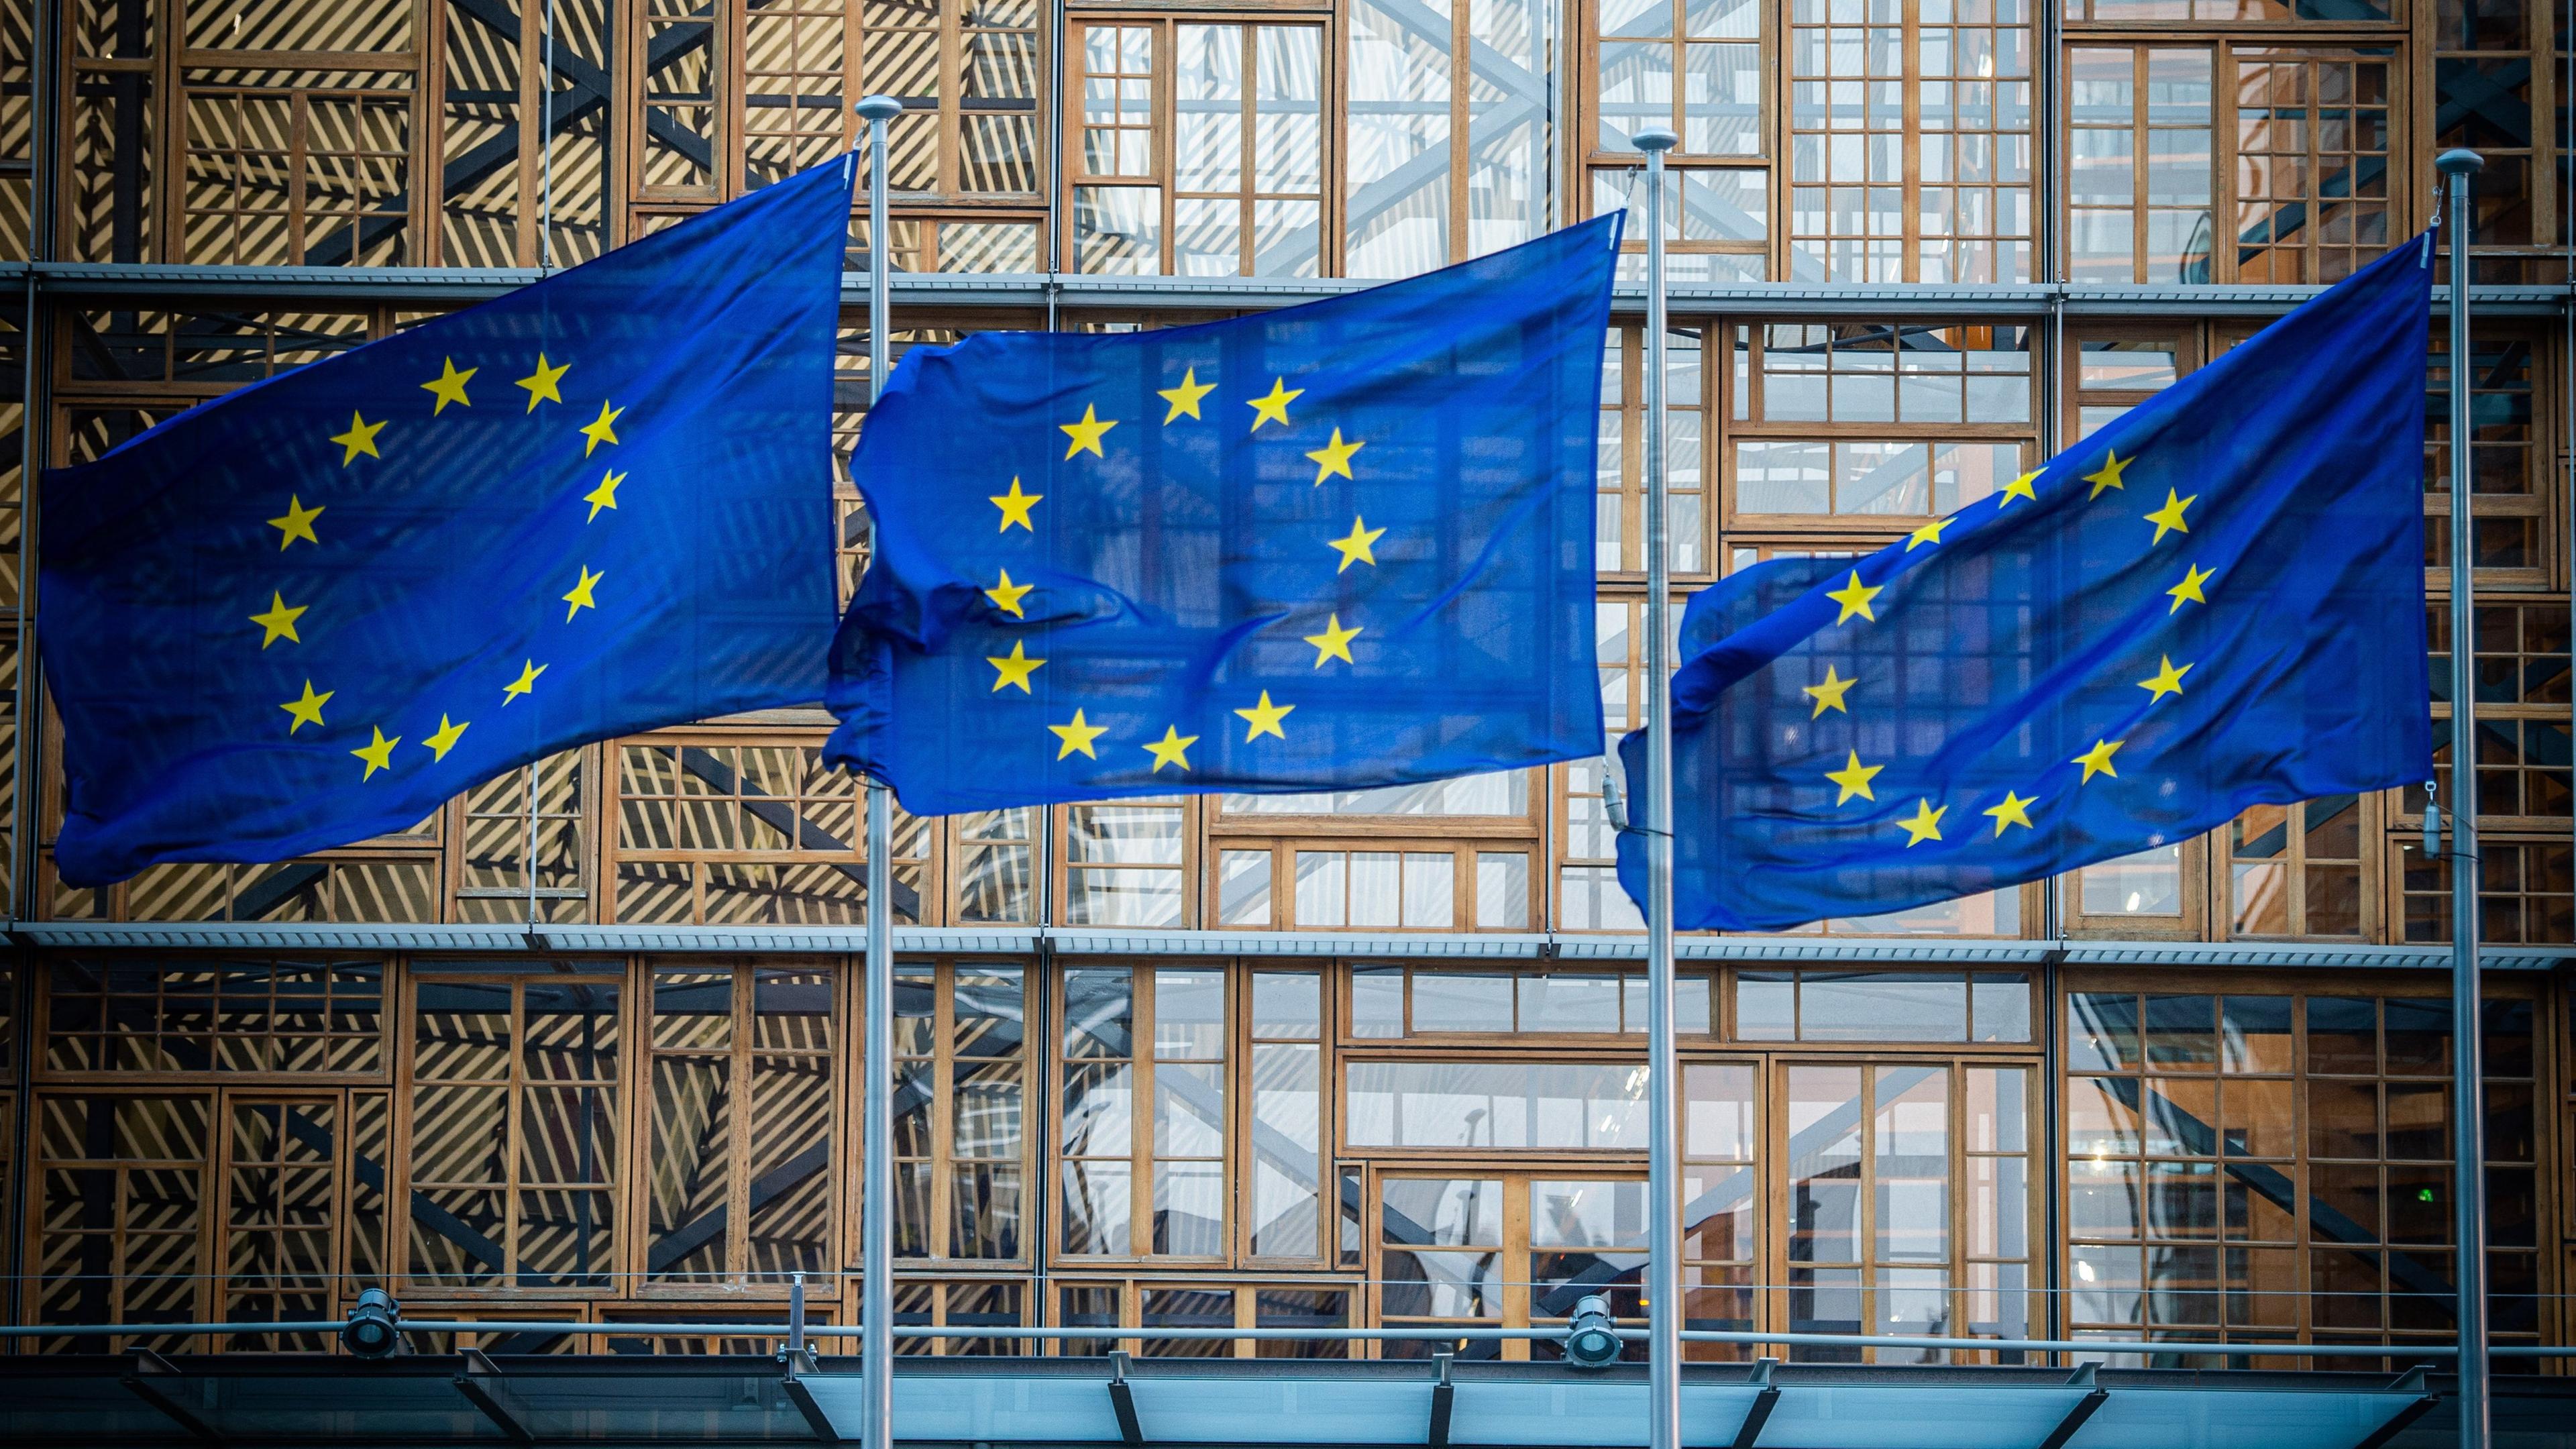 Belgien, Brüssel: Flaggen der Europäischen Union wehen im Wind vor dem Europa-Gebäude.